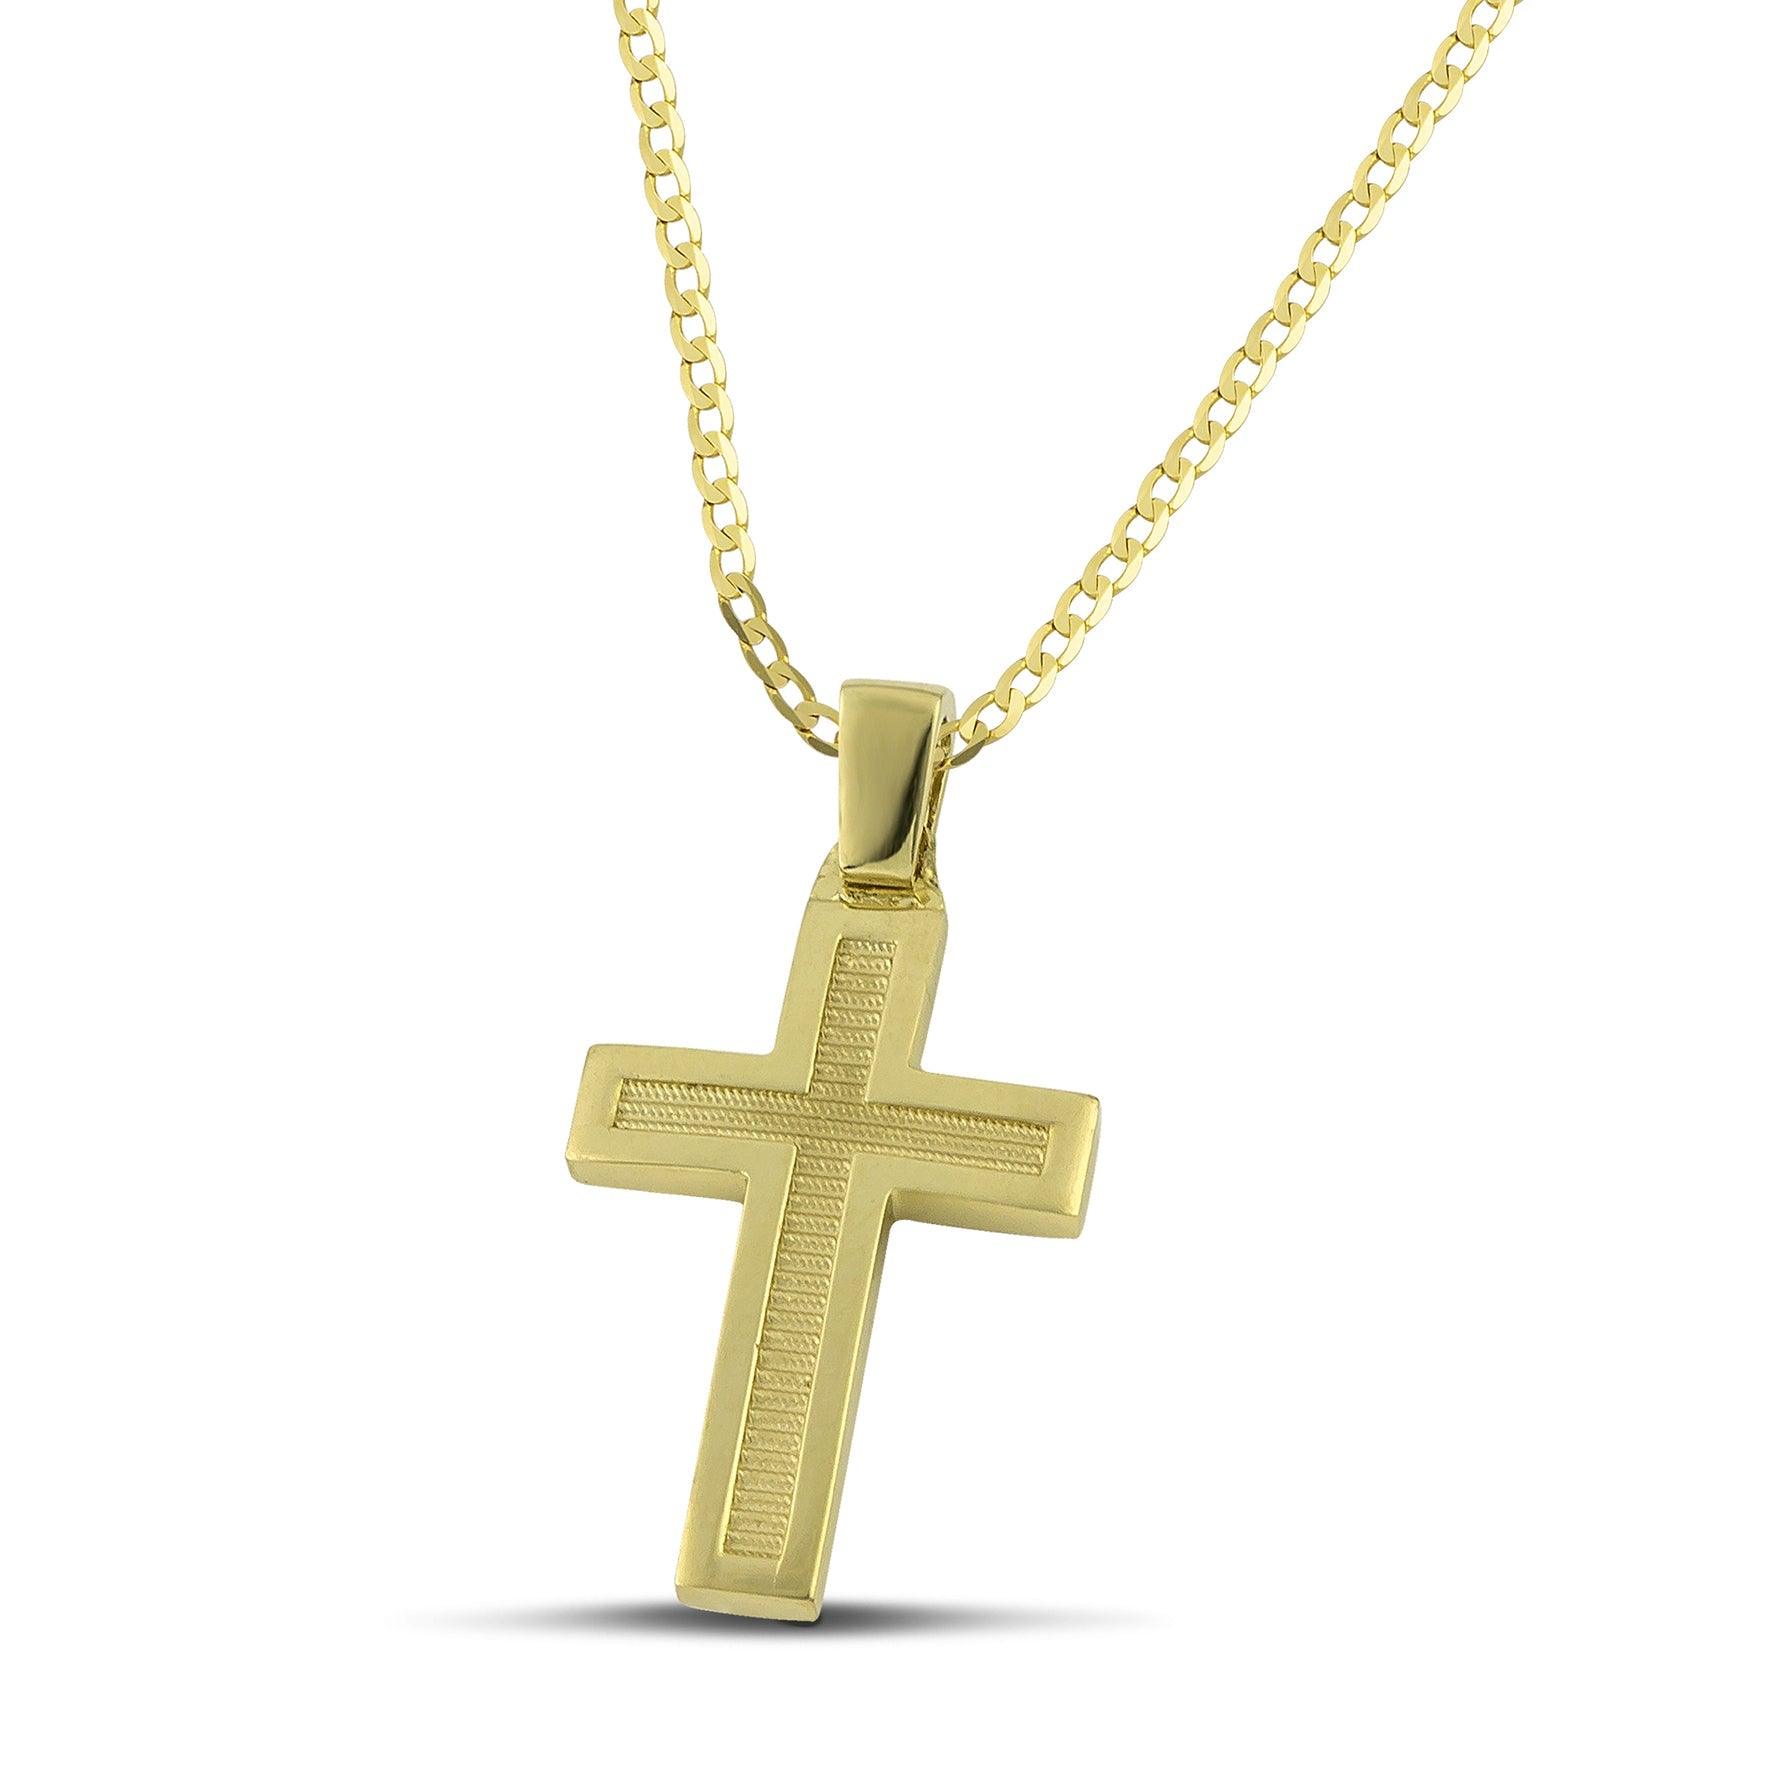 Μοντέρνος βαπτιστικός σταυρός για αγόρι από χρυσό Κ14, διπλής όψης, φορεμένος σε κλασσική αλυσίδα. 